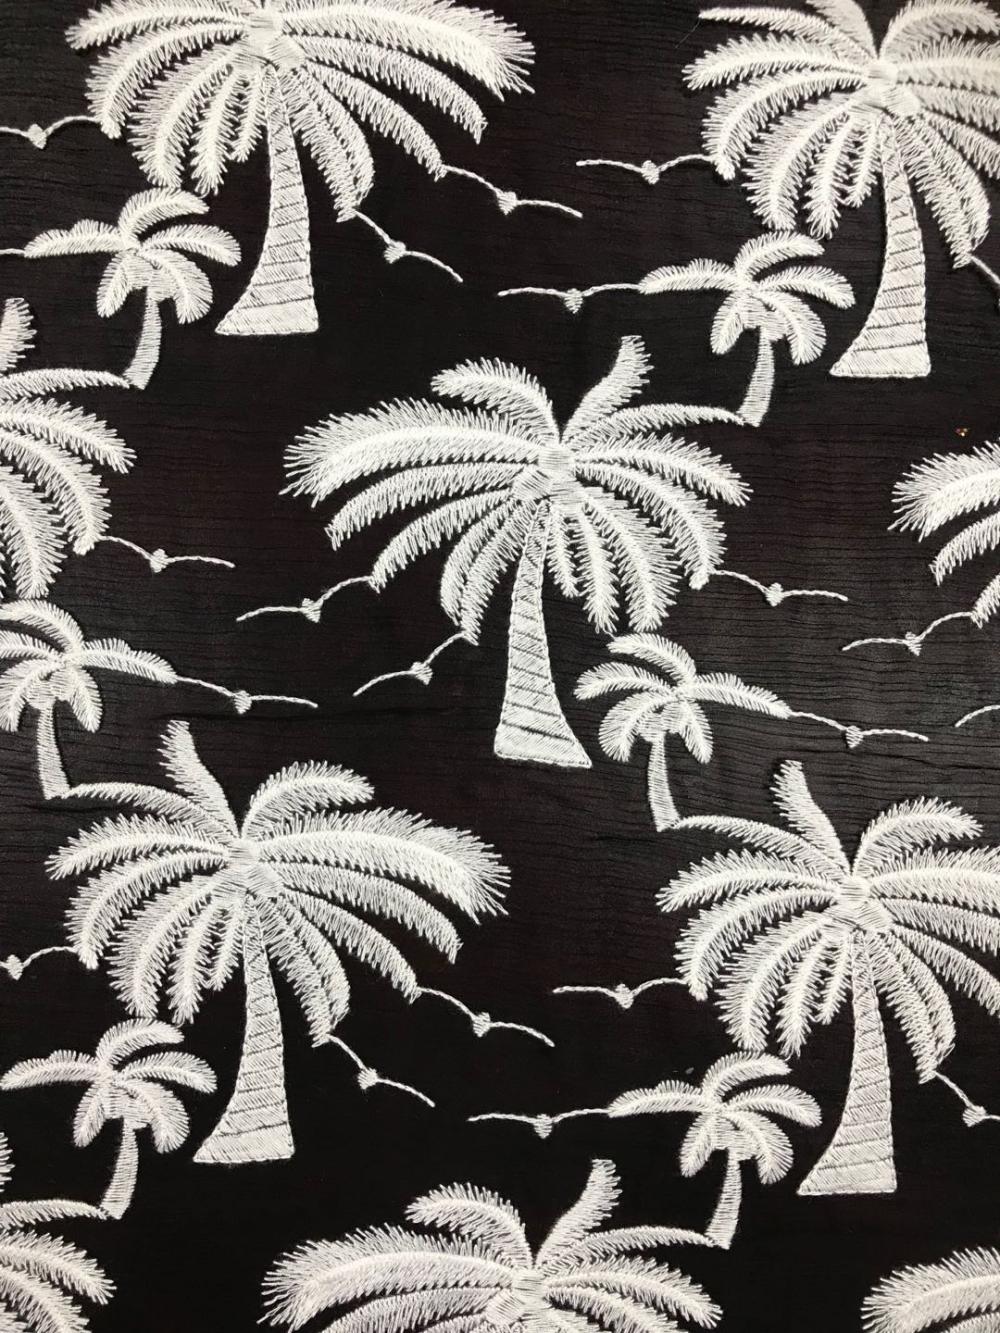 coconut tree design Chiffon Embroider Fabric